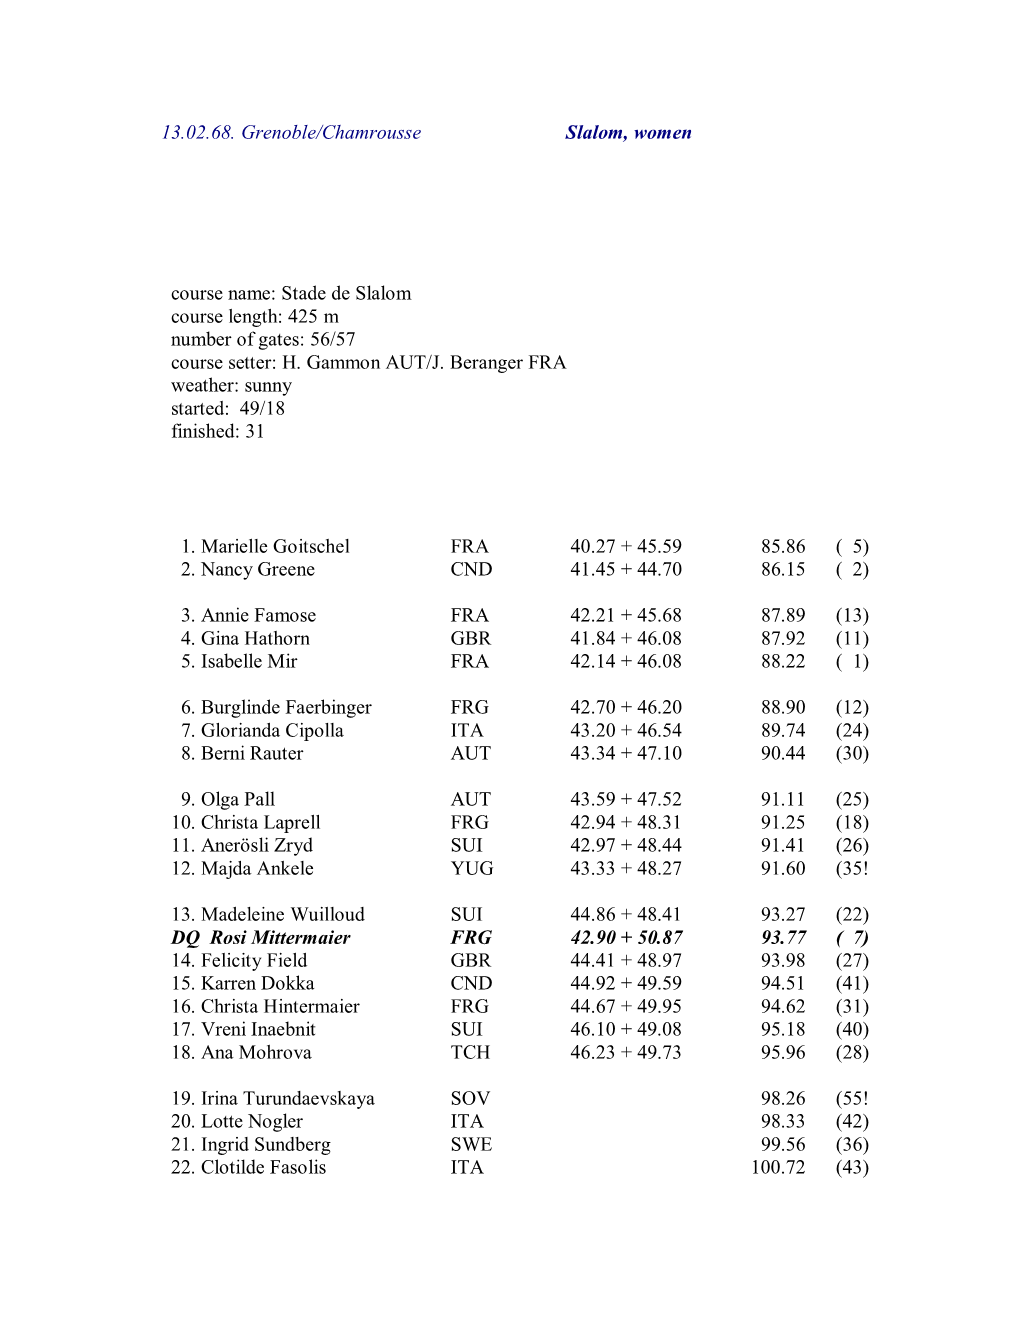 13.02.68. Grenoble/Chamrousse Slalom, Women Course Name